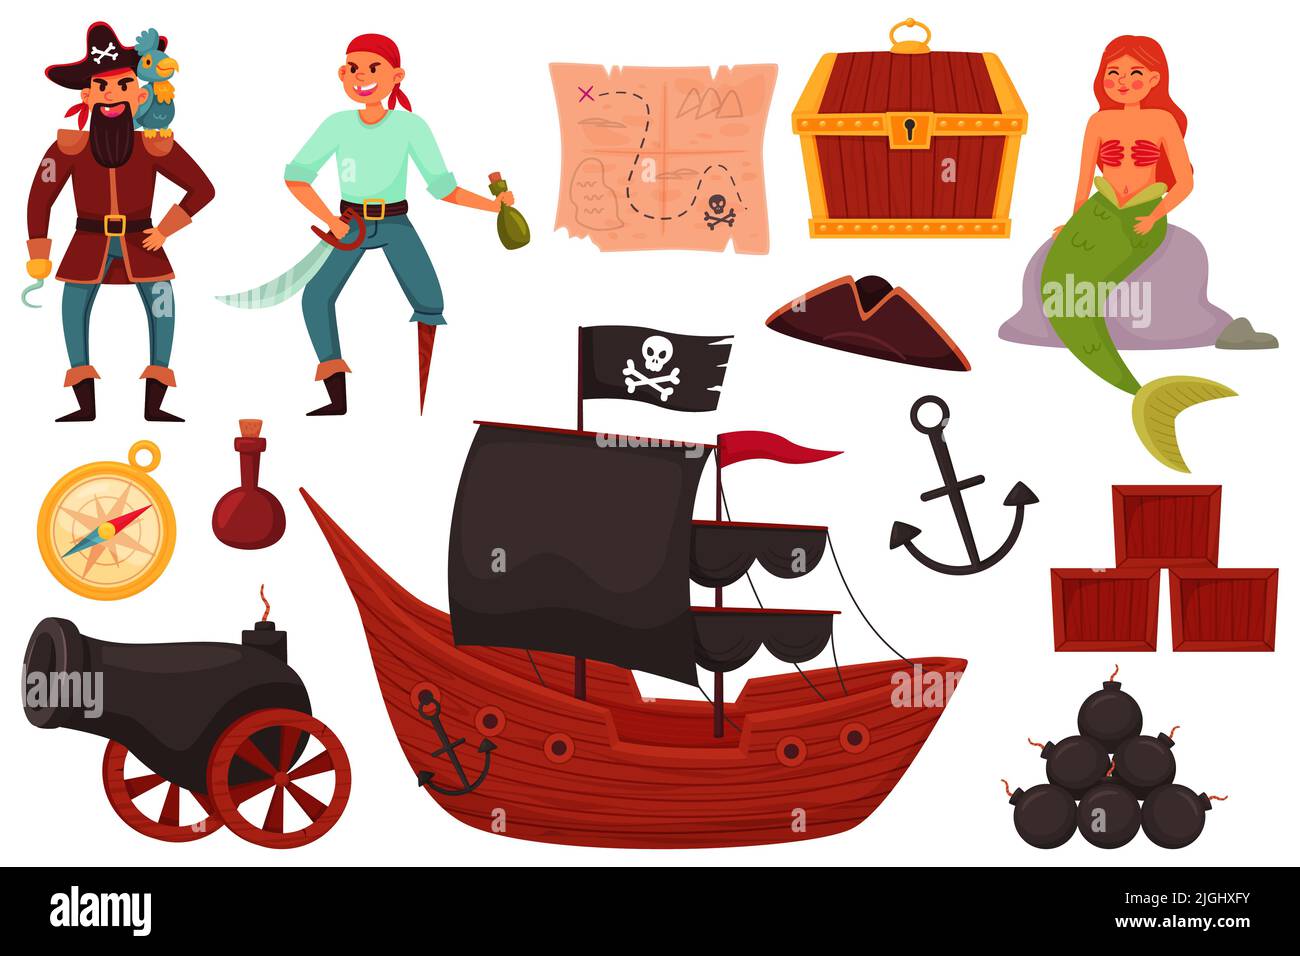 Objetos piratas. Divertido equipo marino, lindo capitán sostener la espada, marinero y sirena, barco con velas negras, dibujos animados elementos aislados, cañón y ancla Ilustración del Vector